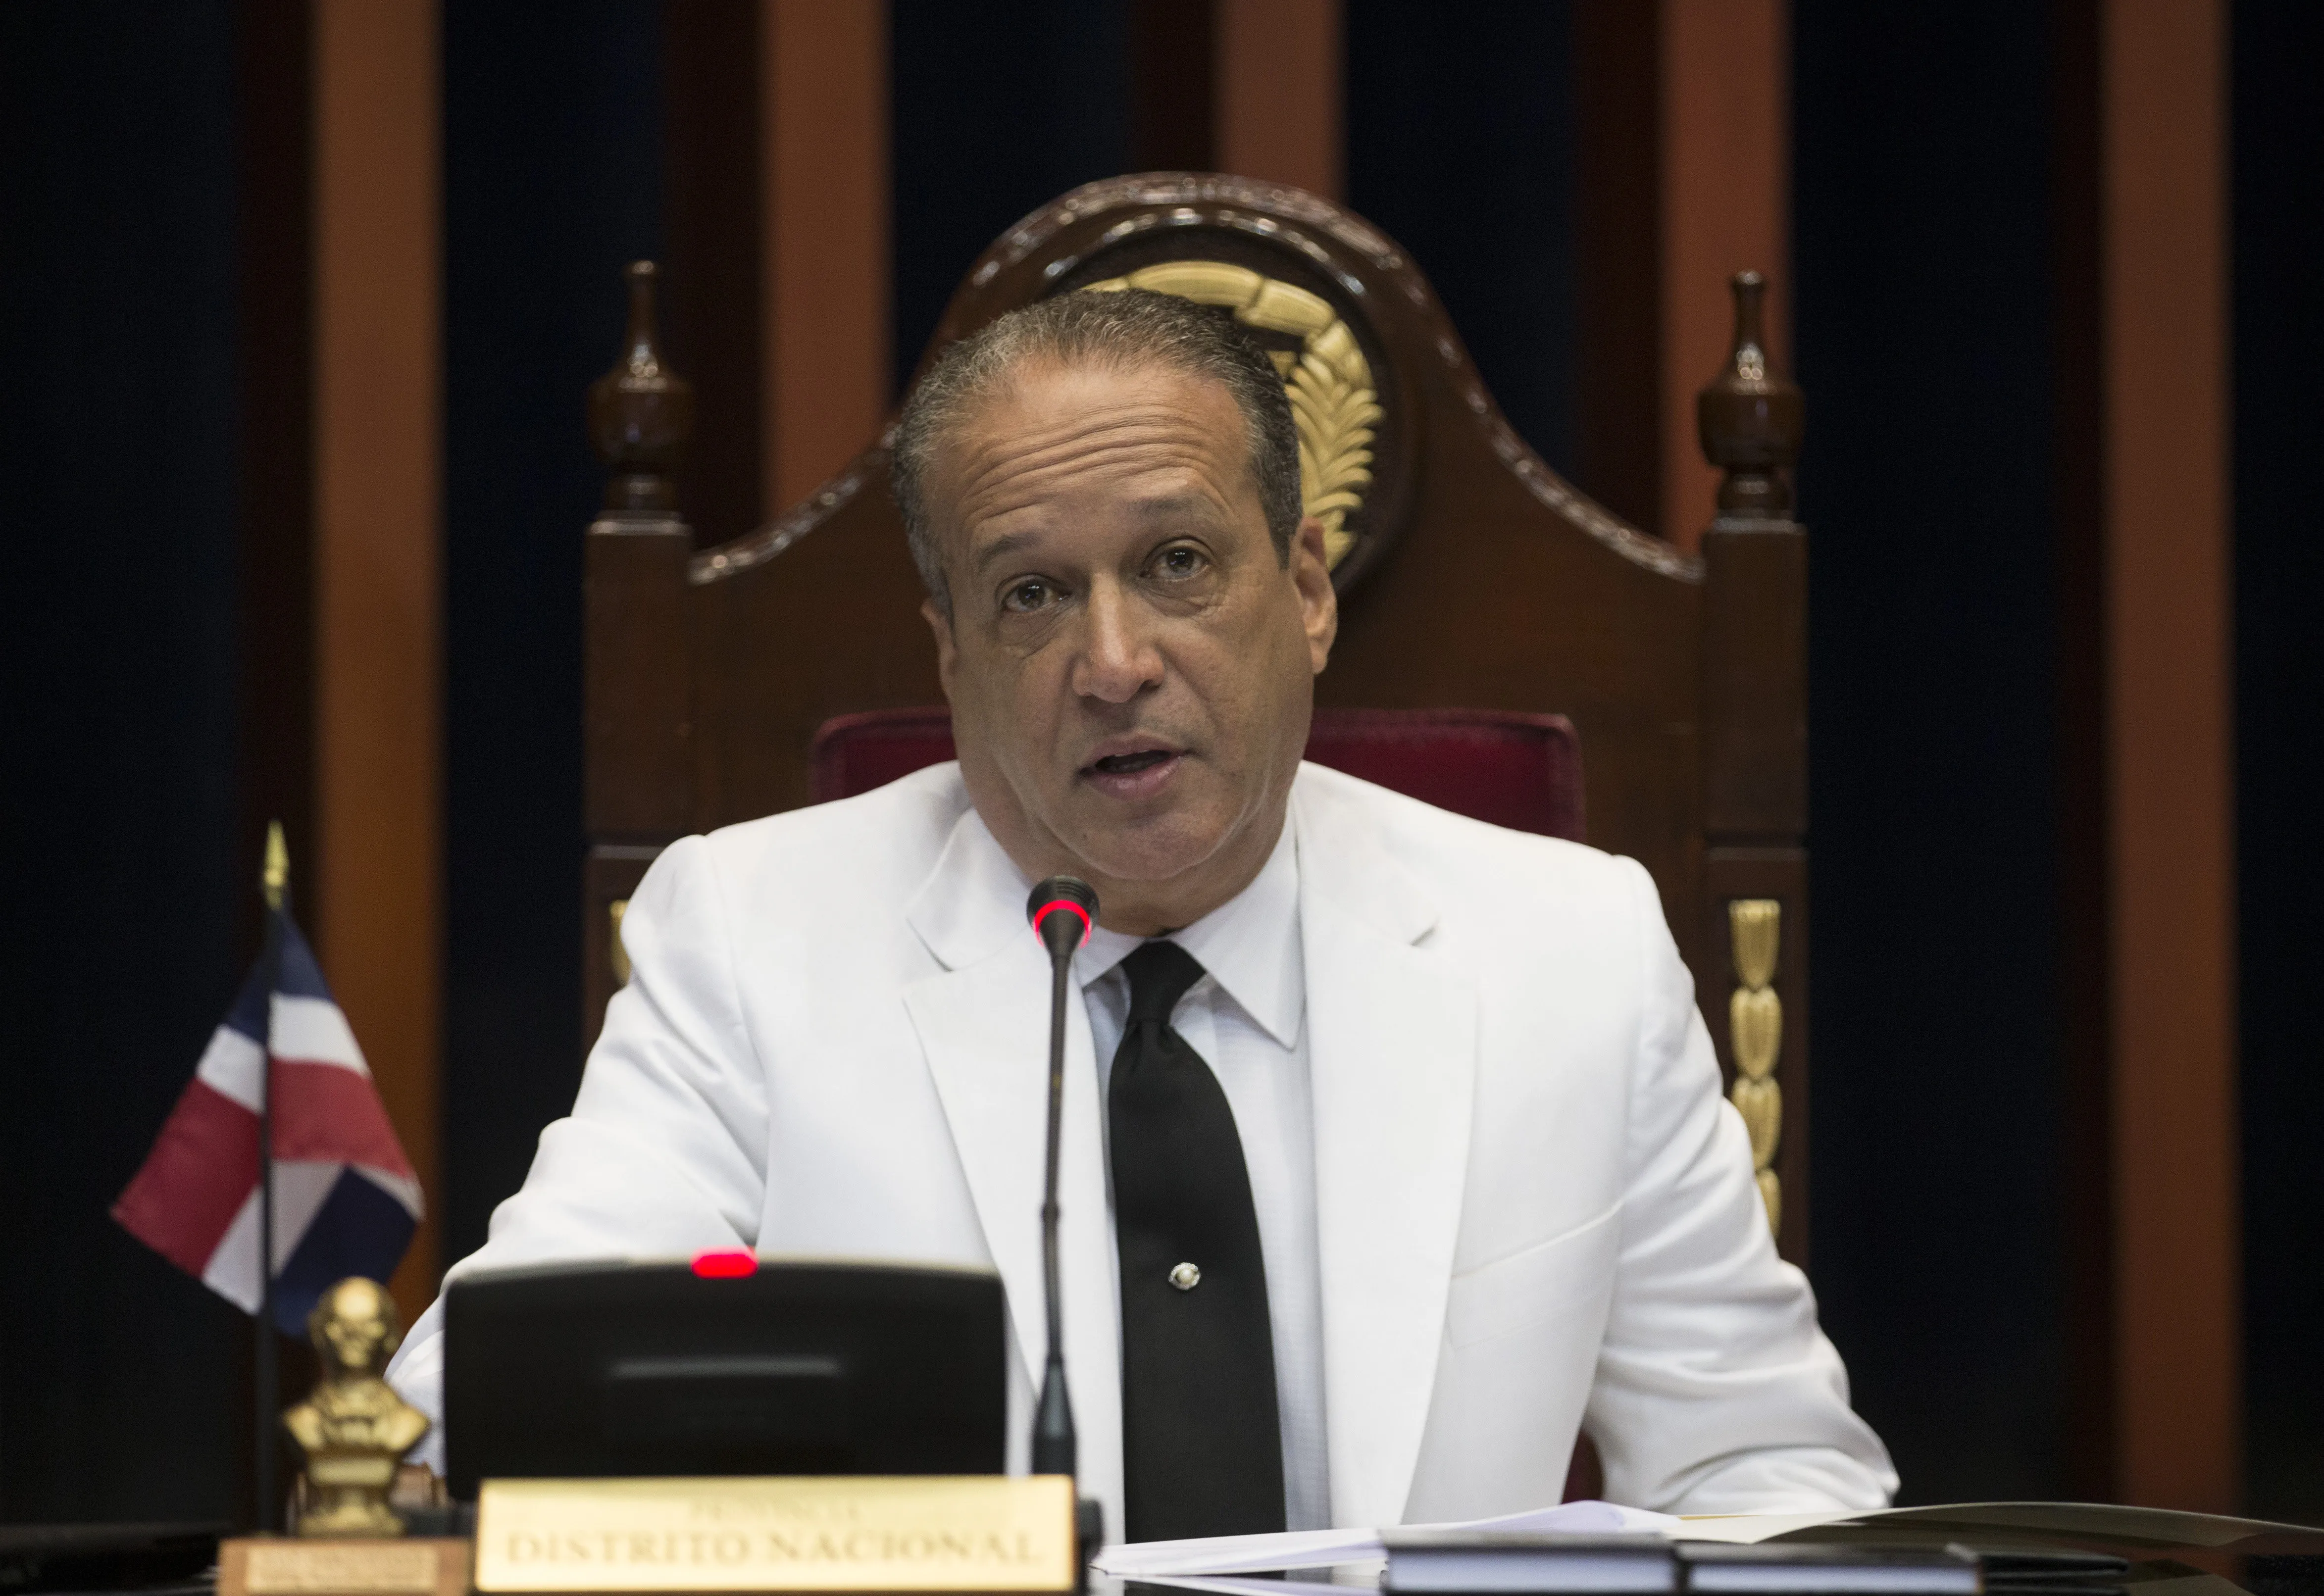 La clase política dominicana lamenta la muerte de Reinaldo Pared Pérez